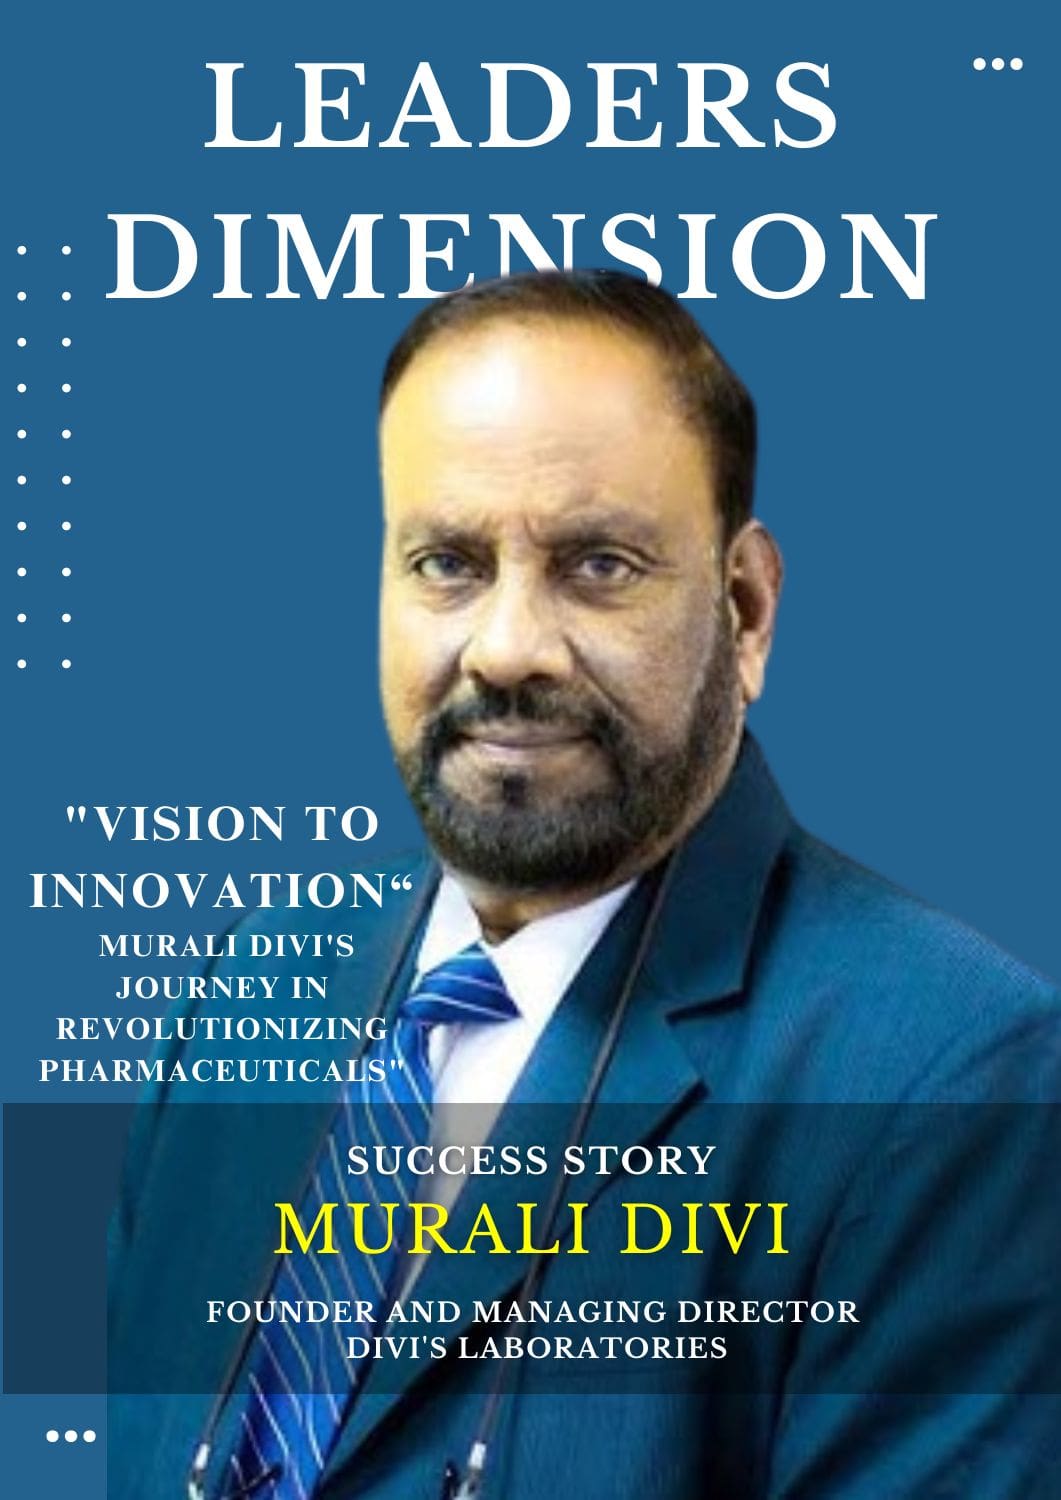 Murali Divi's Success Journey in Revolutionizing Pharmaceuticals